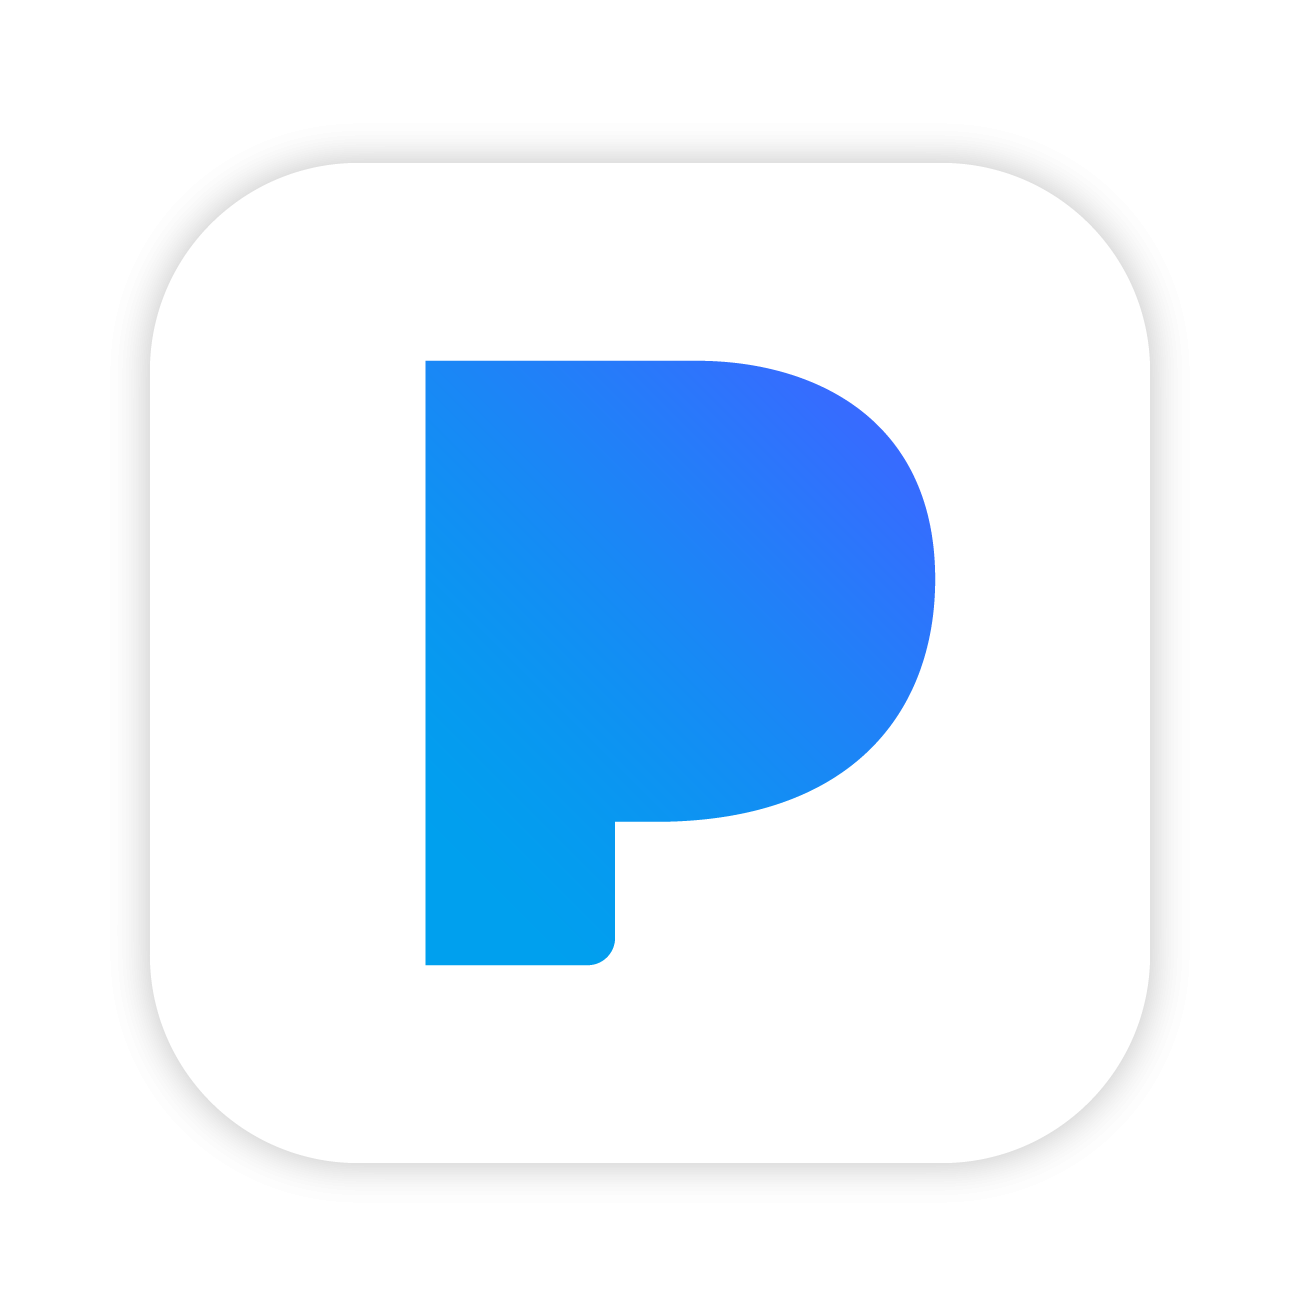 Pandora Logo PNG Image in Transparent 1289x1289 pngteam.com